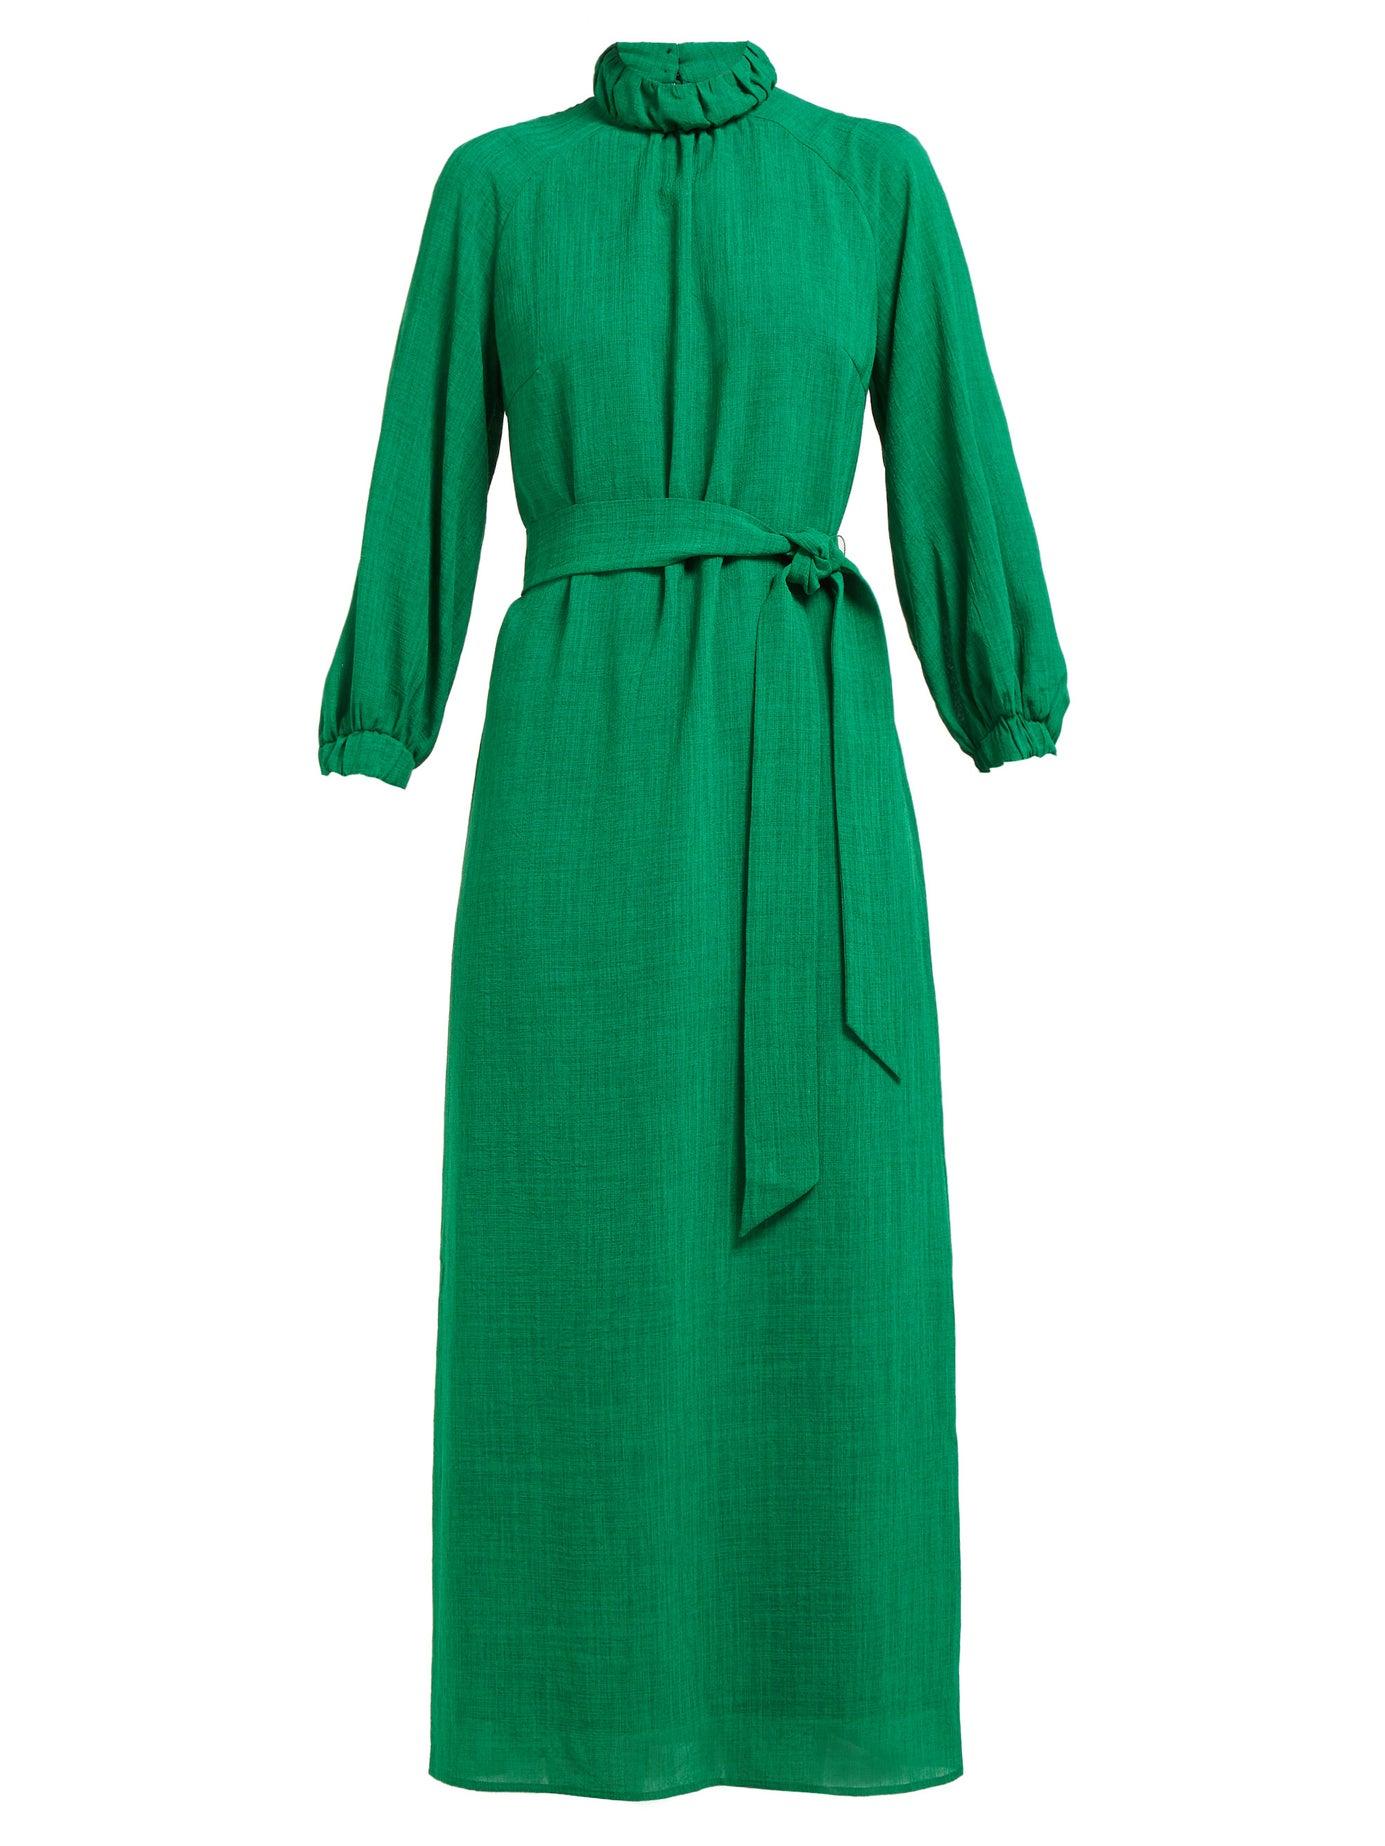 Cefinn Leather Tie-waist High-neck Voile Midi Dress in Green - Lyst